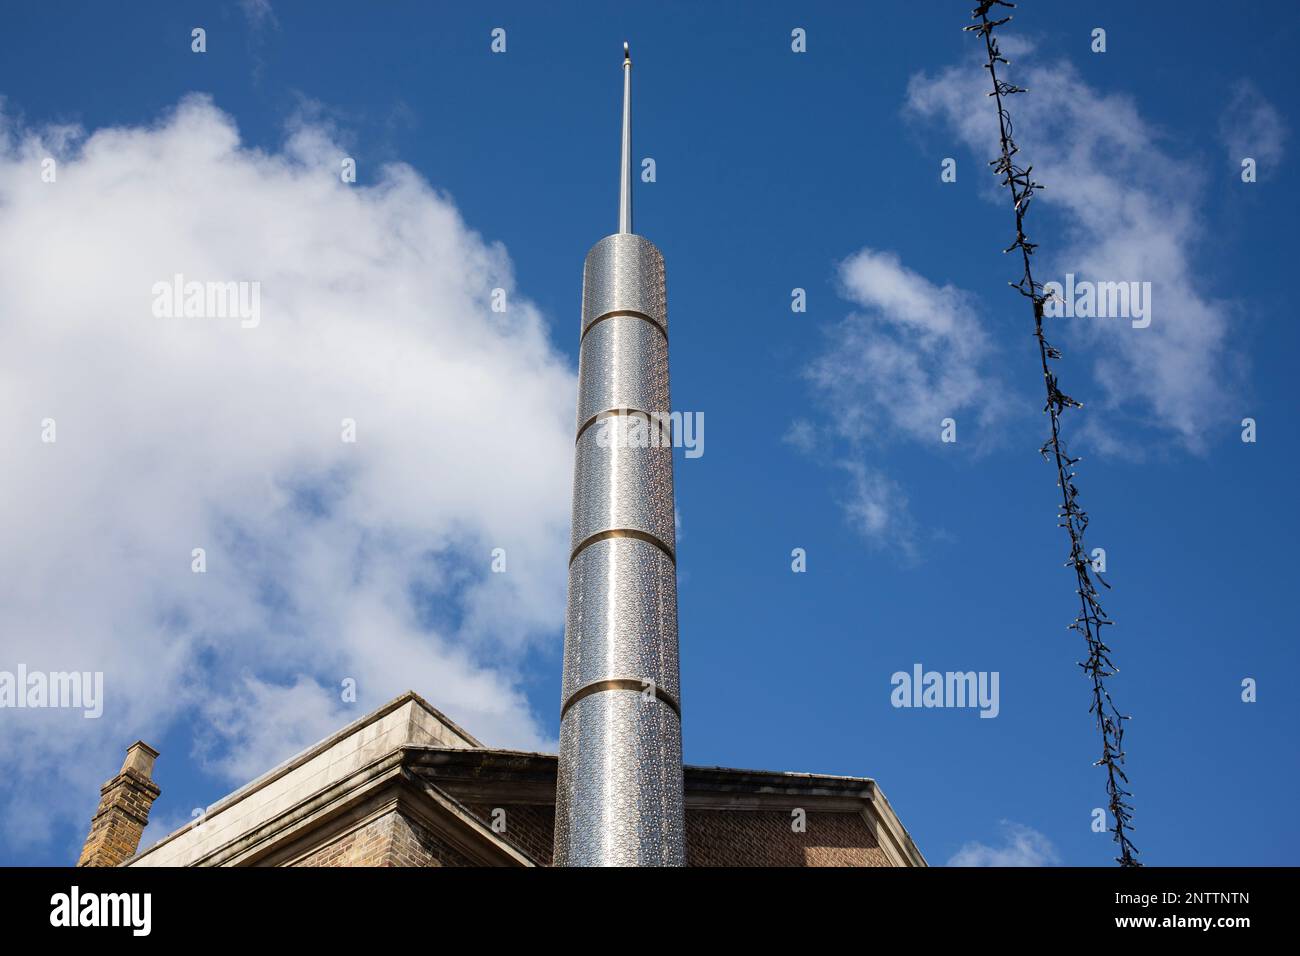 Le minaret argenté de la mosquée de Brick Lane Jamme Masjid à Brick Lane, à l'est de Londres. Banque D'Images